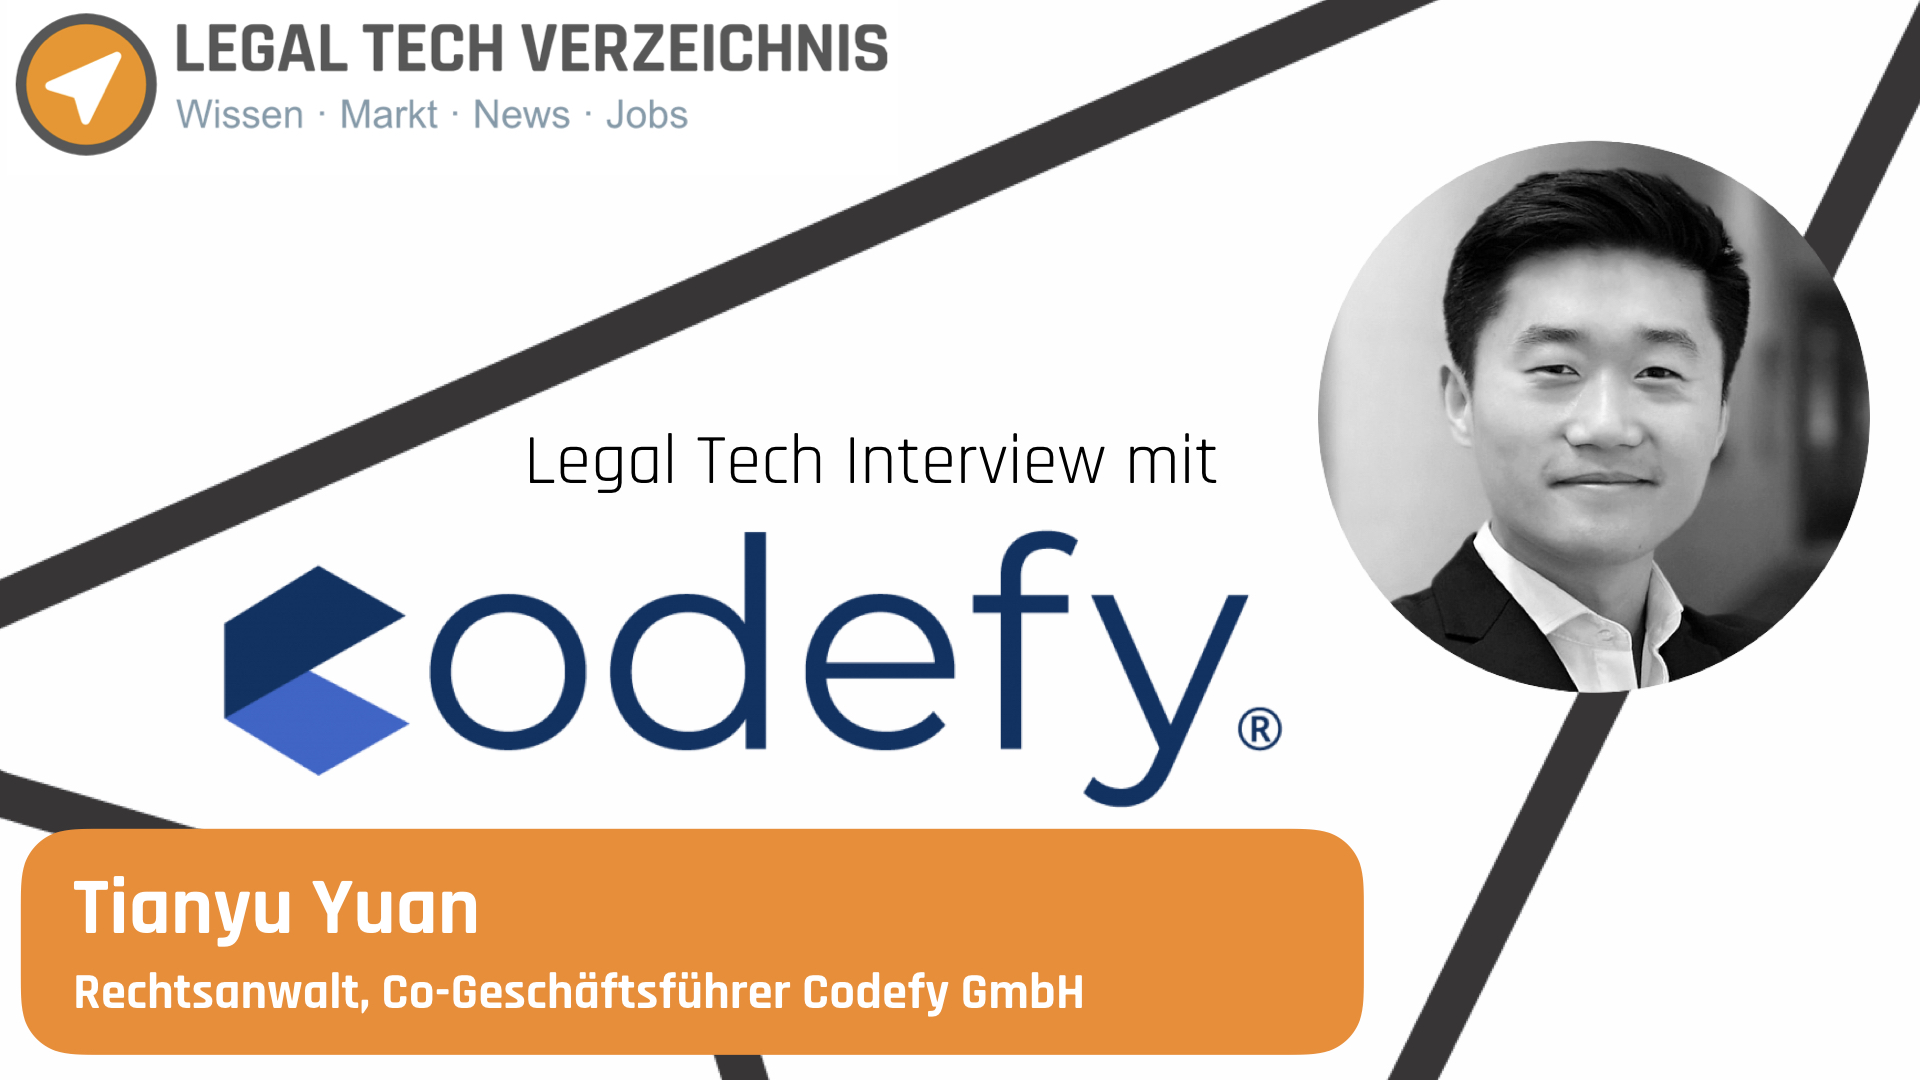 Tianyu Yuan, Rechtsanwalt und Co-Geschäftsführer der Codefy GmbH, im Interview